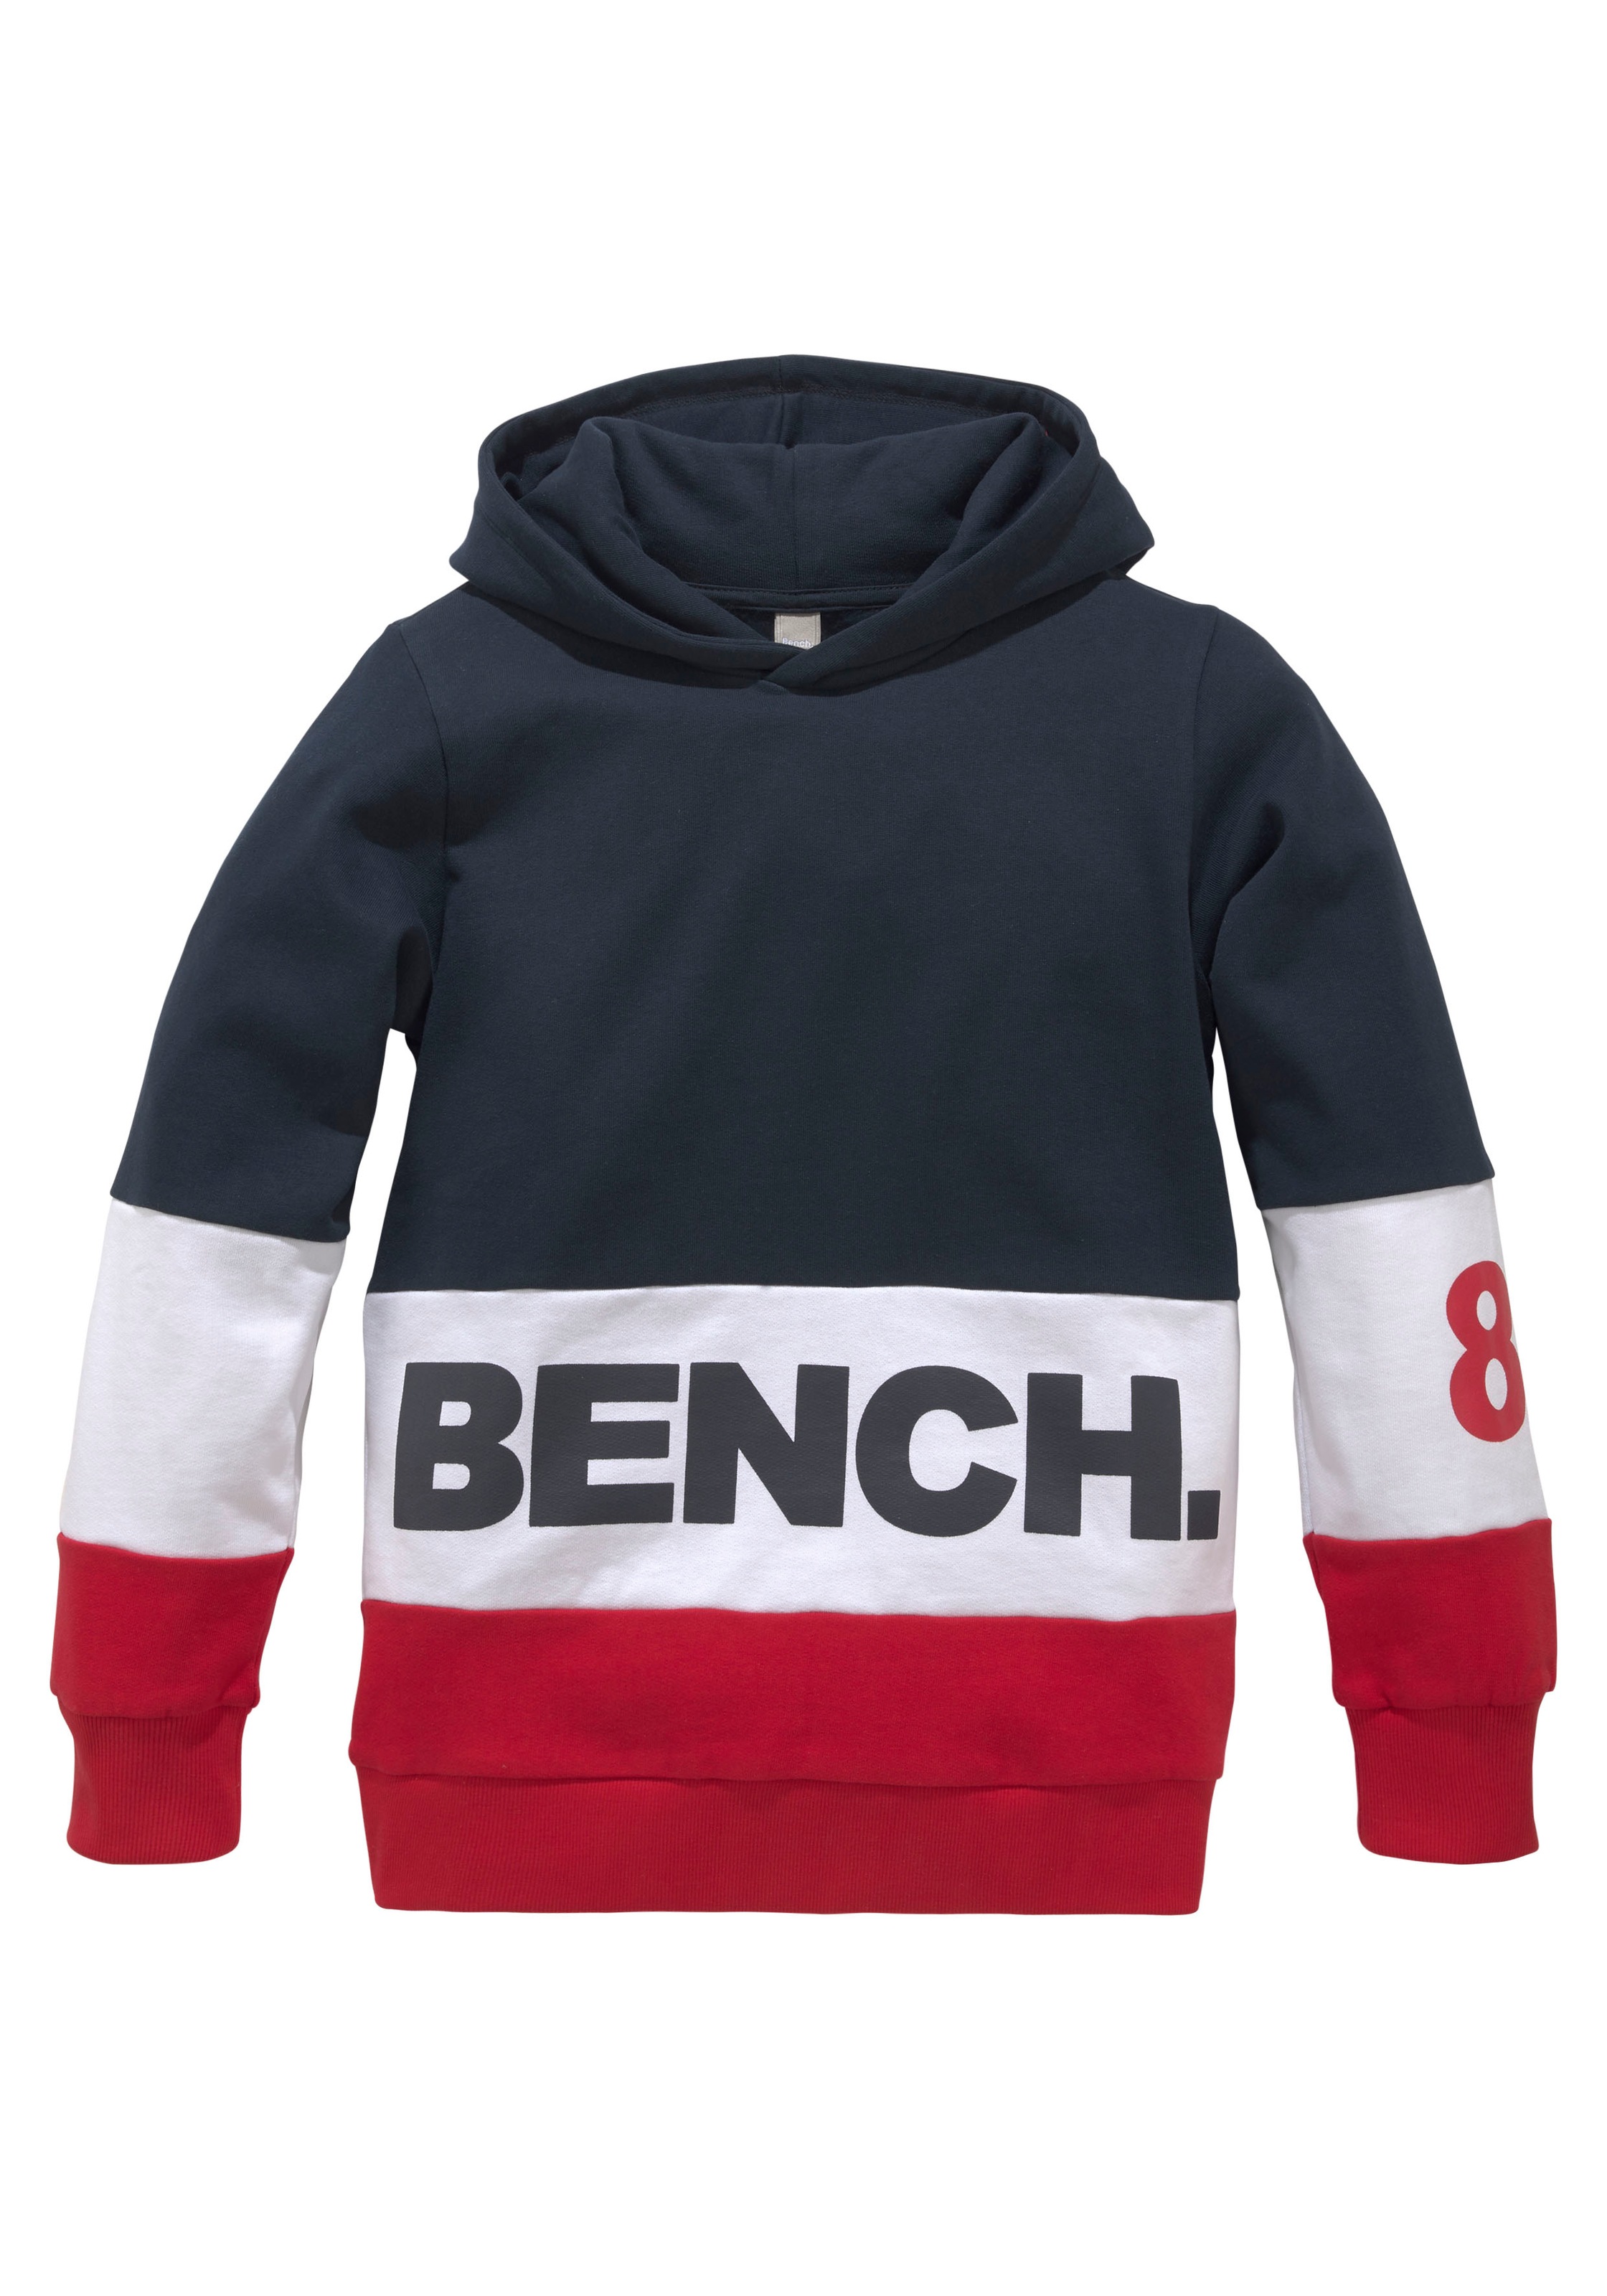 Bench. Kapuzensweatshirt, kaufen Online-Shop im colourblocking Design im